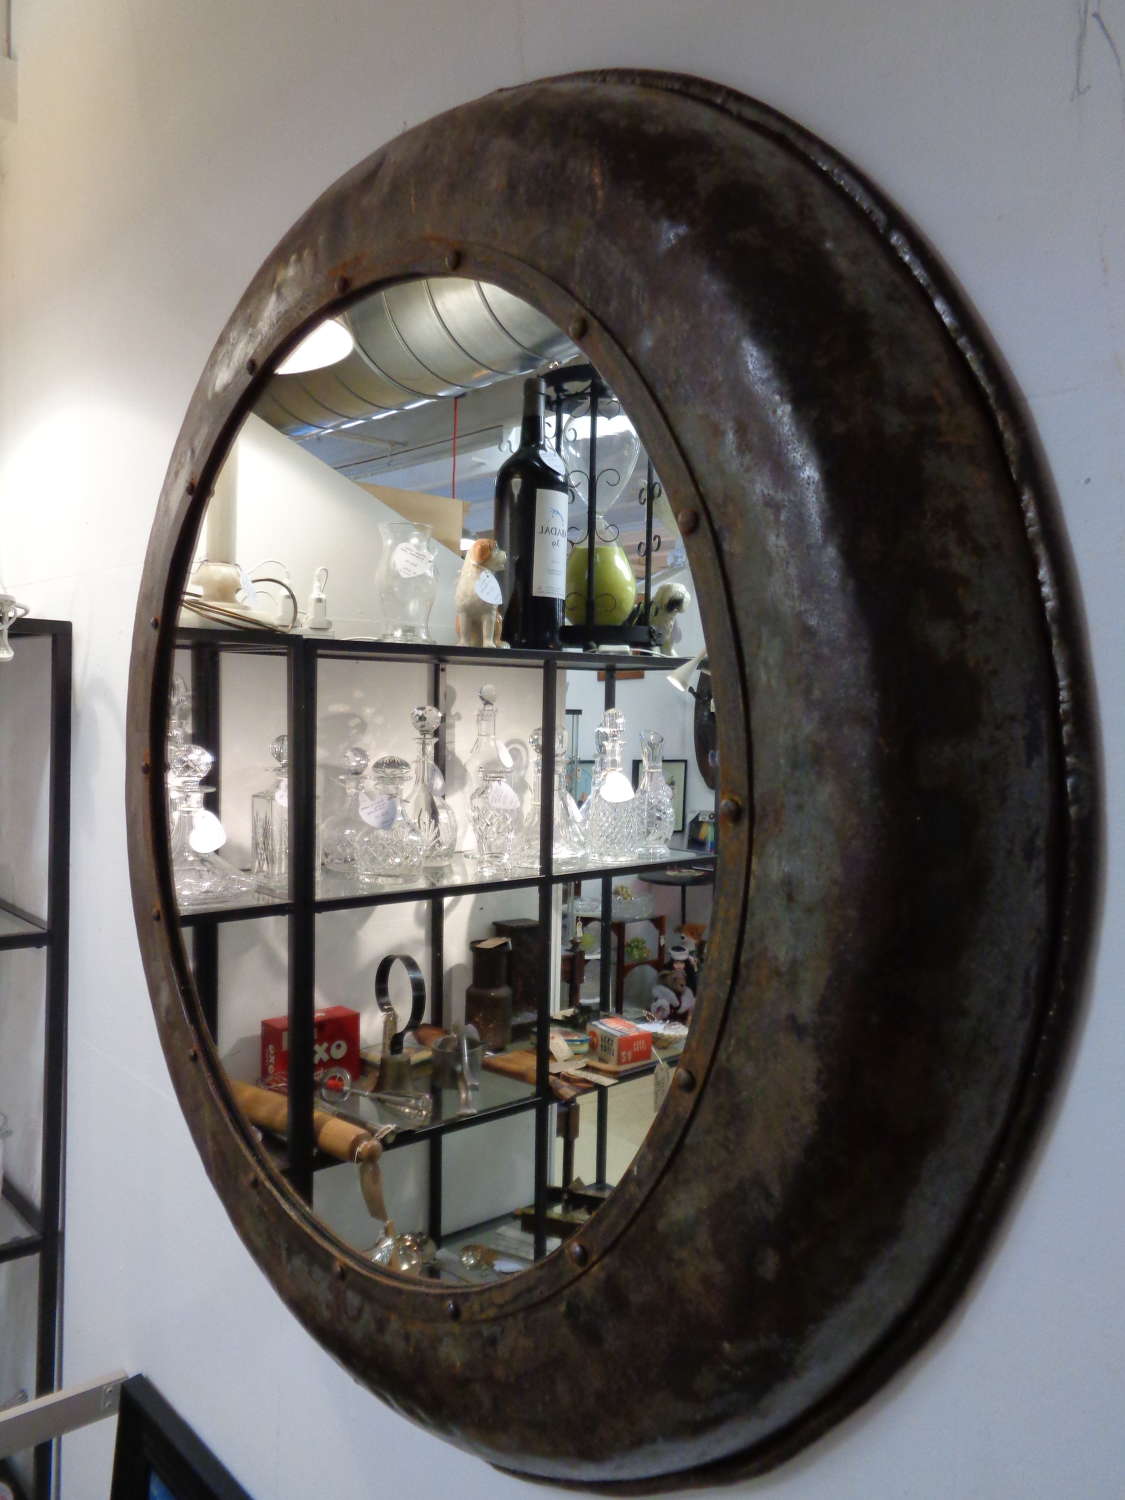 Metal Round Mirror